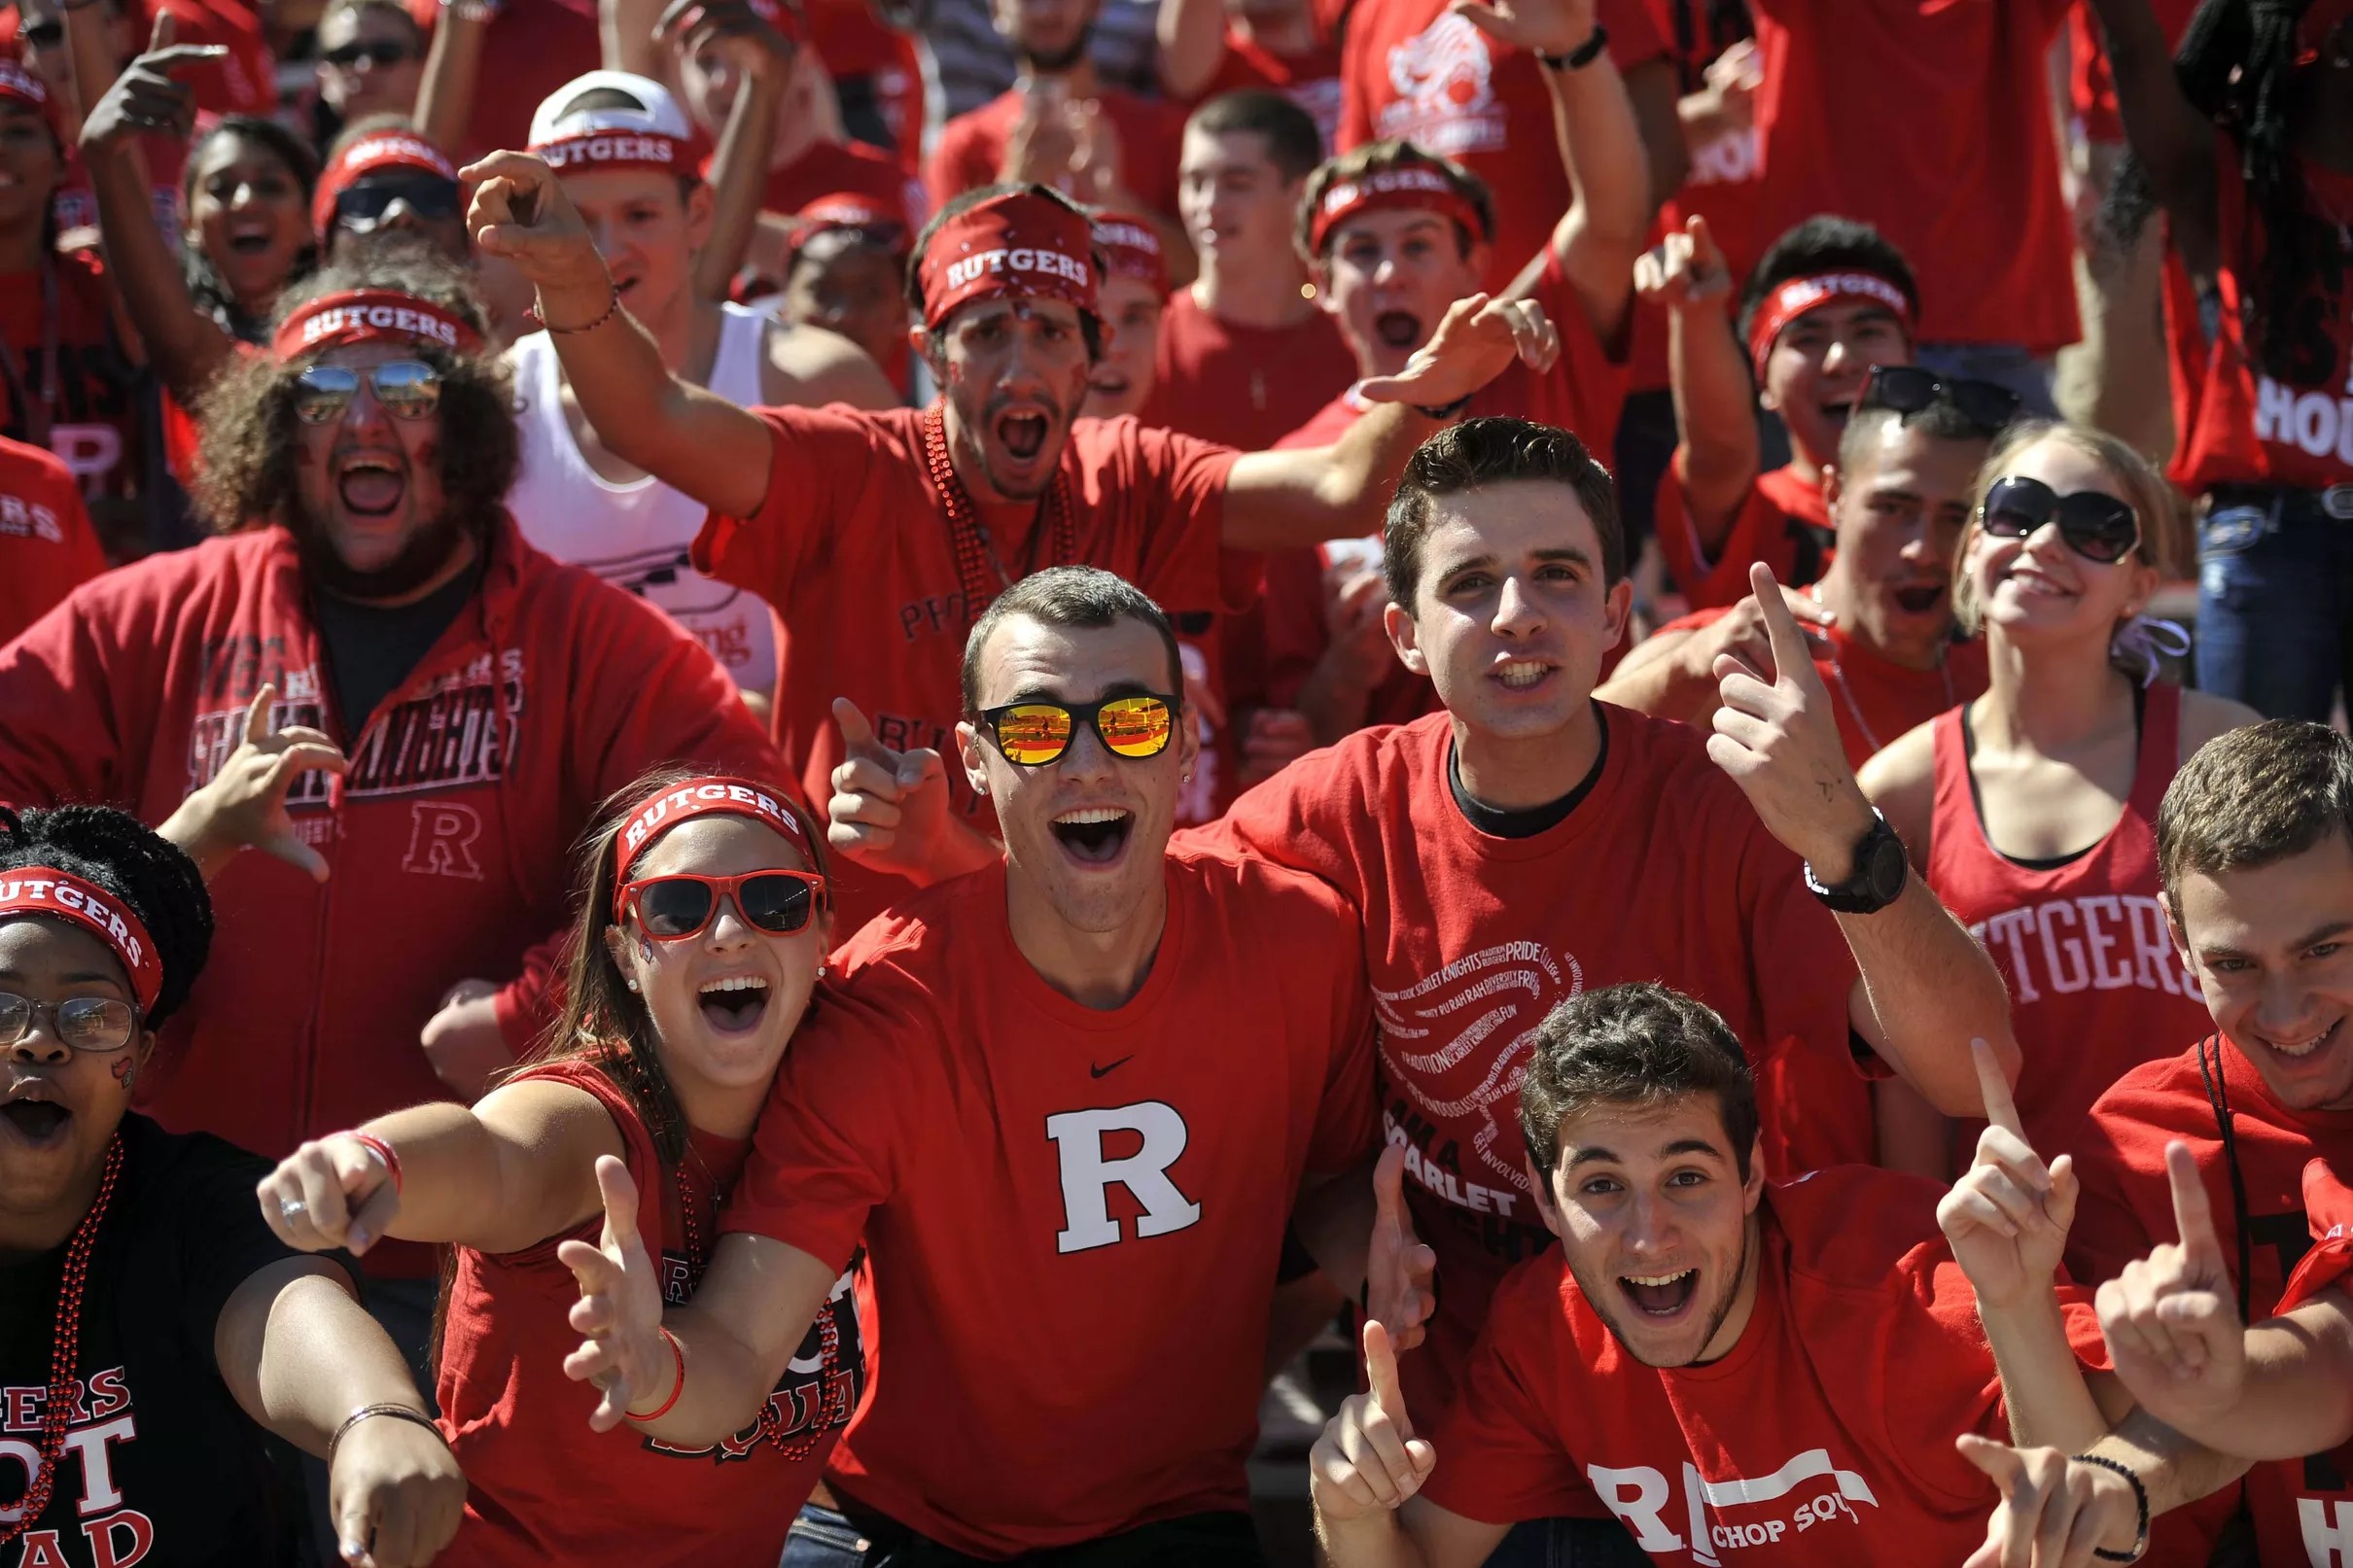 Strengthening the Rutgers Fan Identity